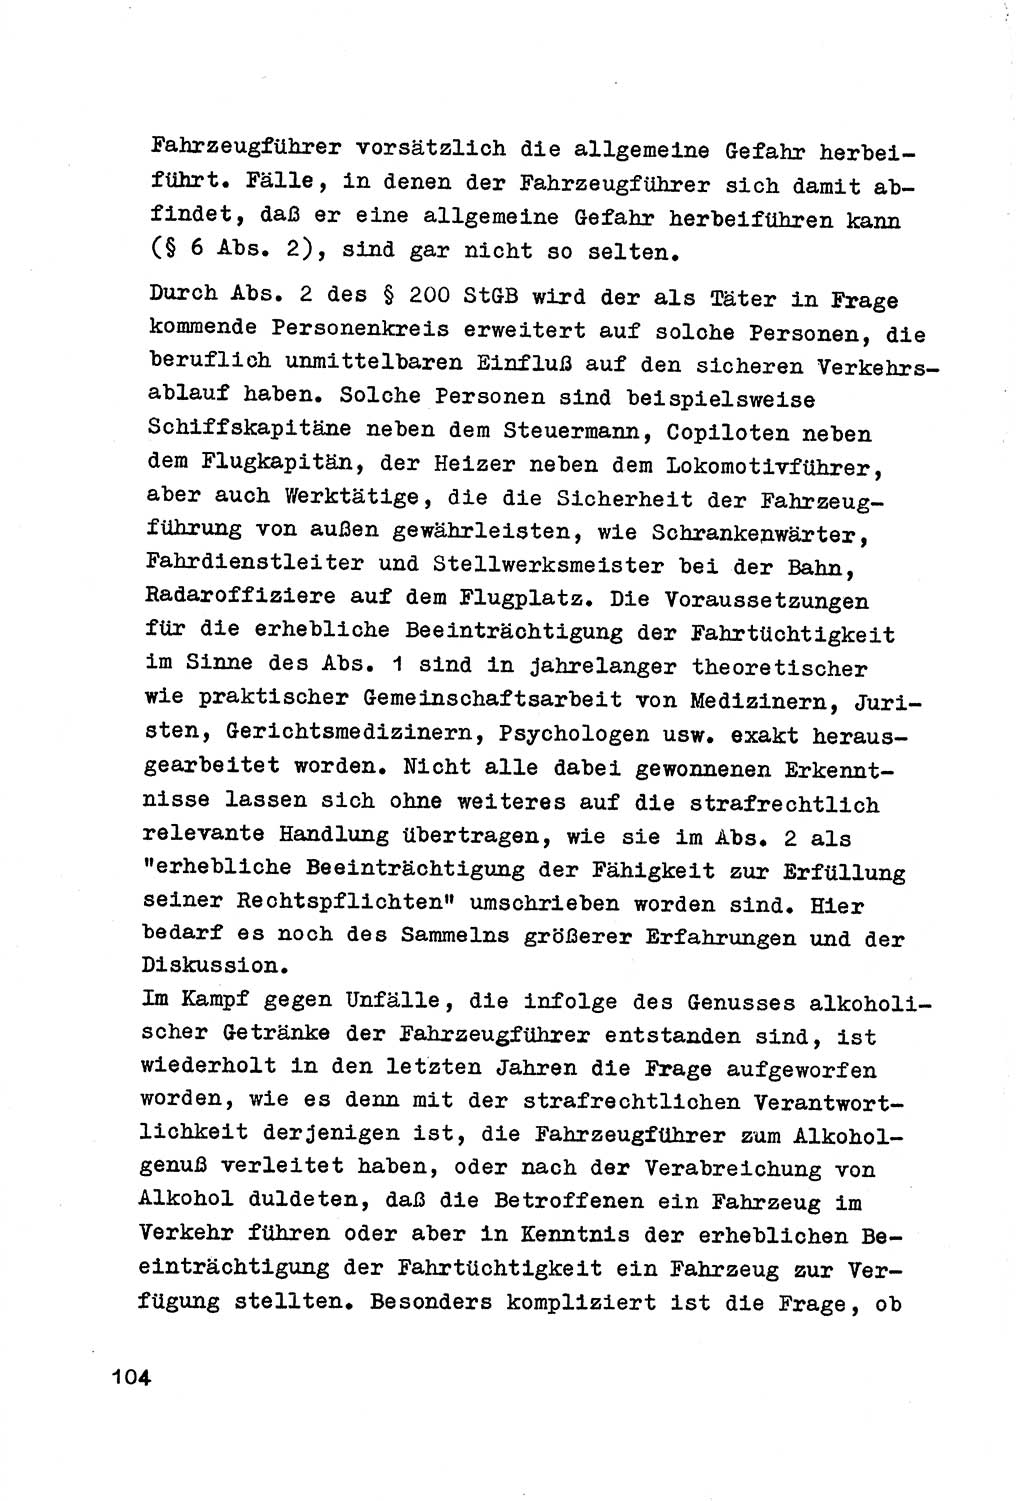 Strafrecht der DDR (Deutsche Demokratische Republik), Besonderer Teil, Lehrmaterial, Heft 7 1970, Seite 104 (Strafr. DDR BT Lehrmat. H. 7 1970, S. 104)